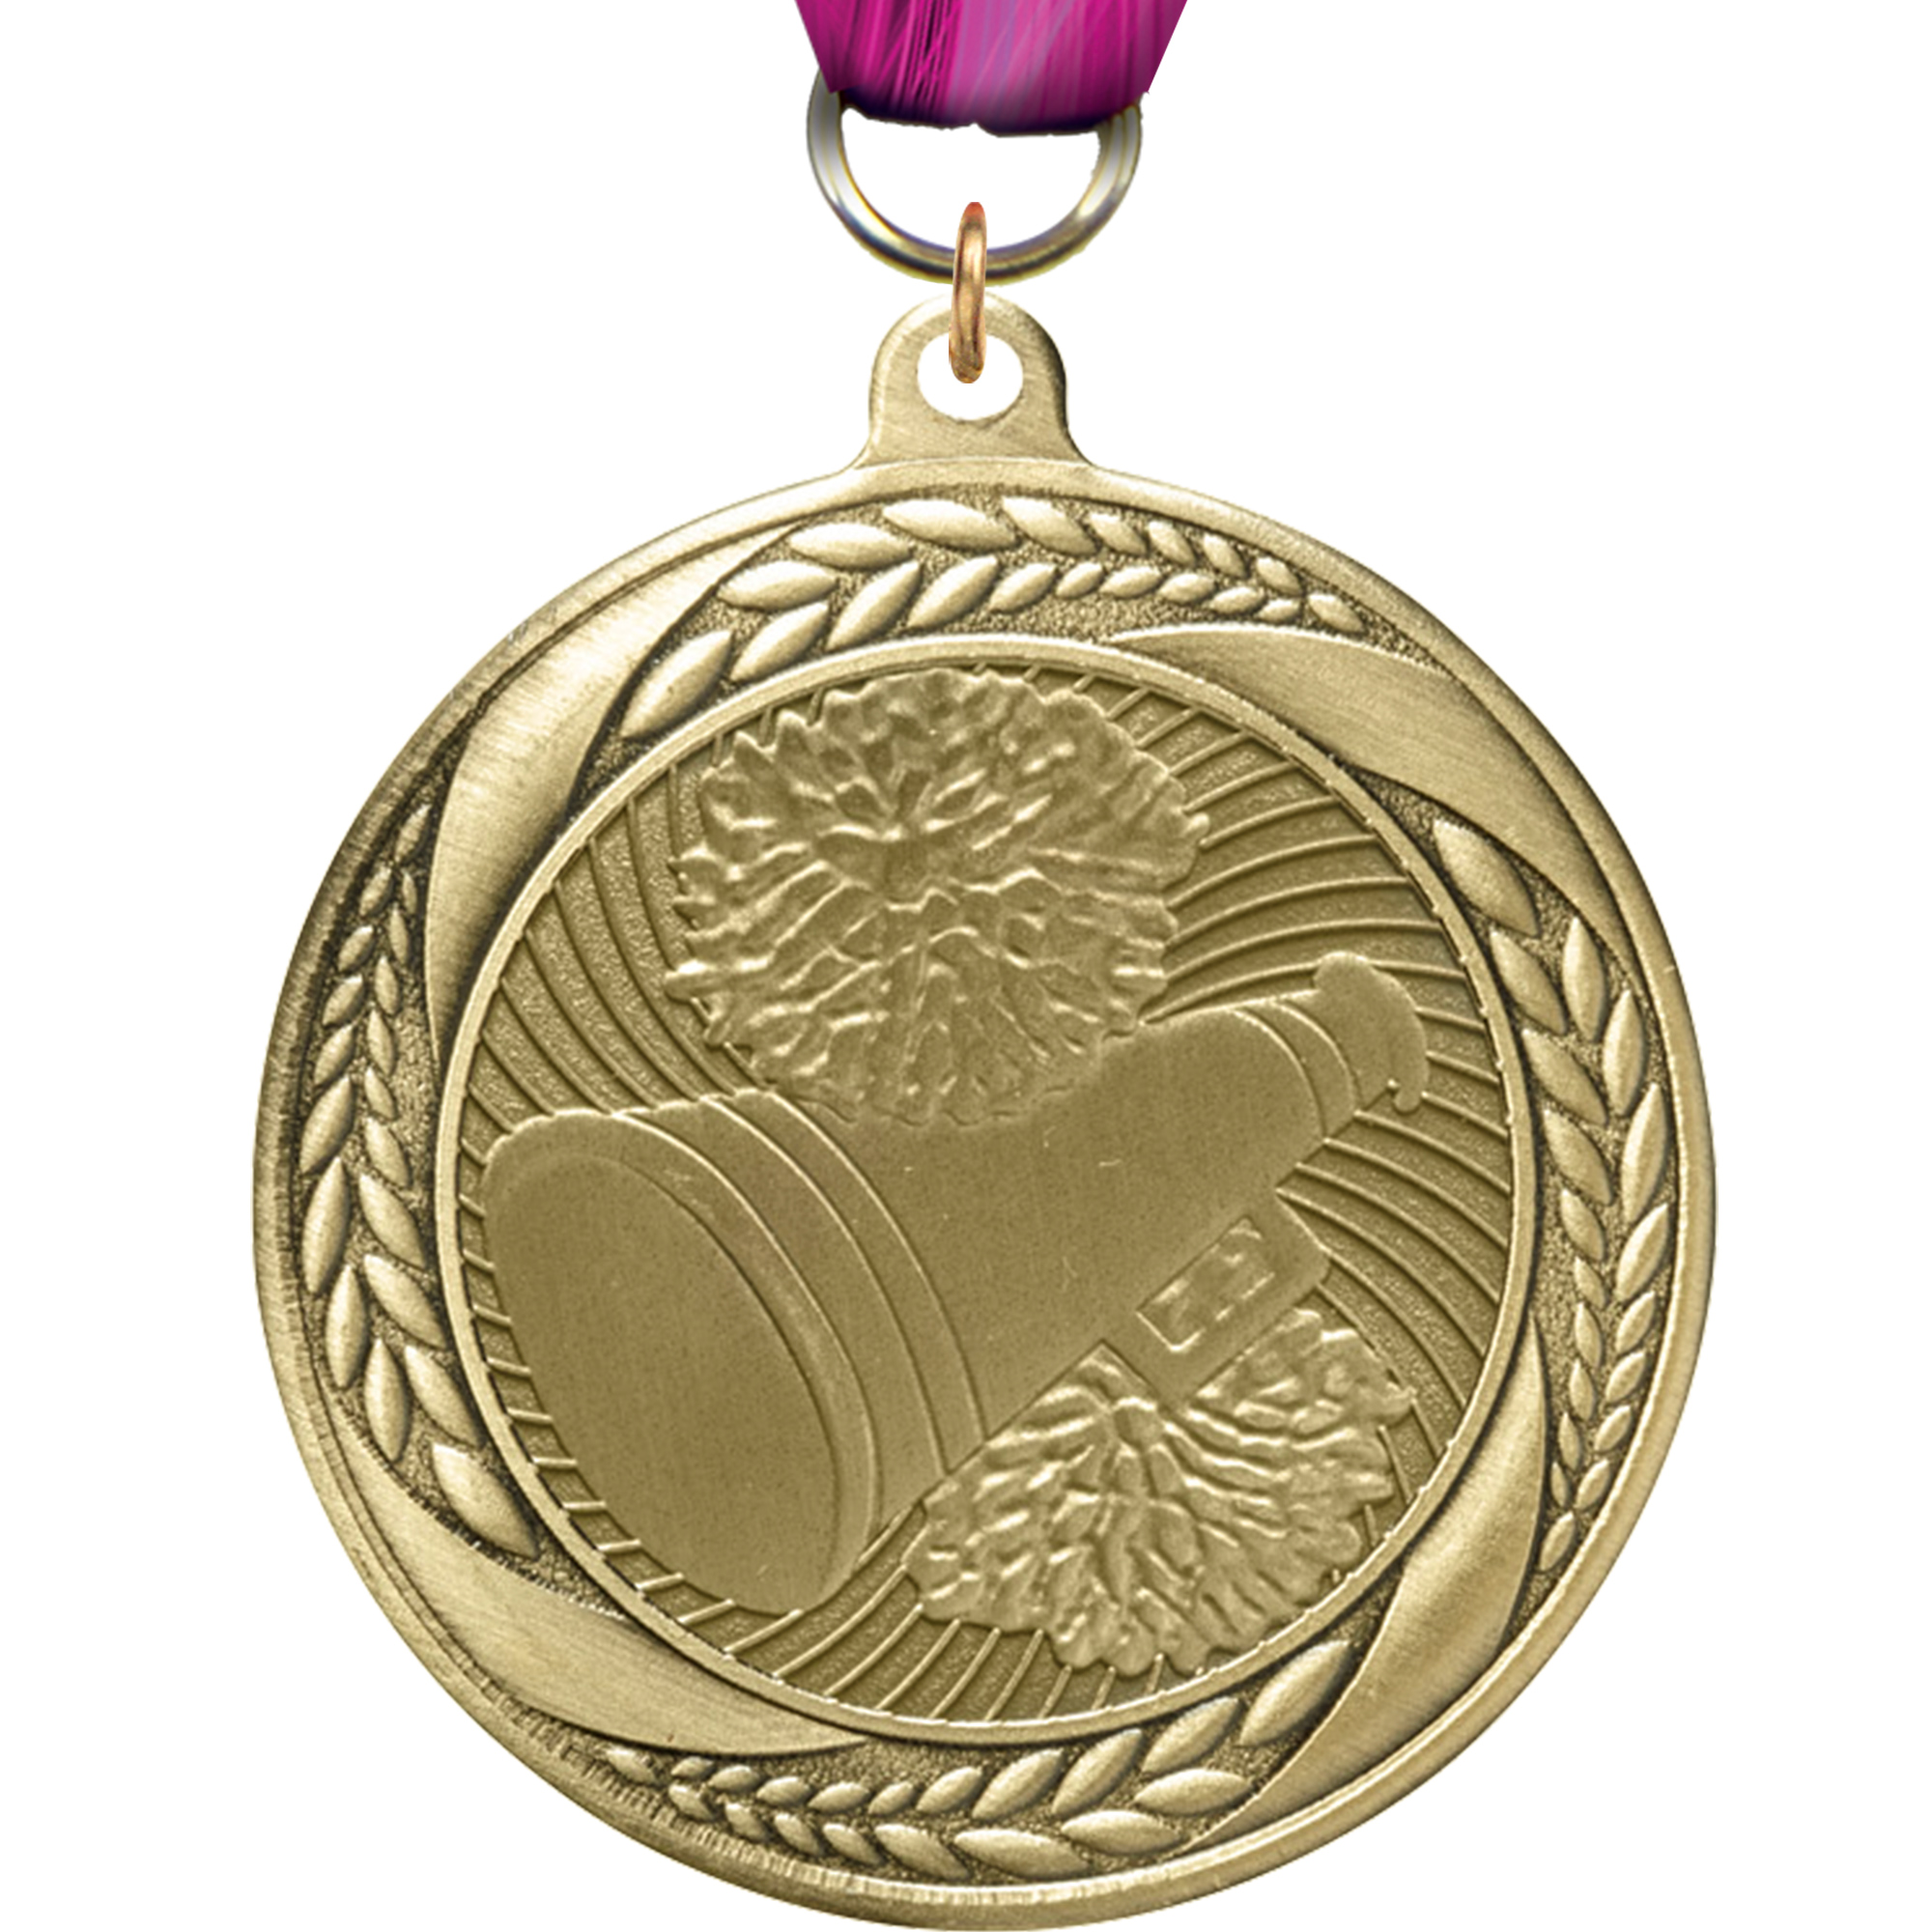 Cheer Laurel Wreath Medal